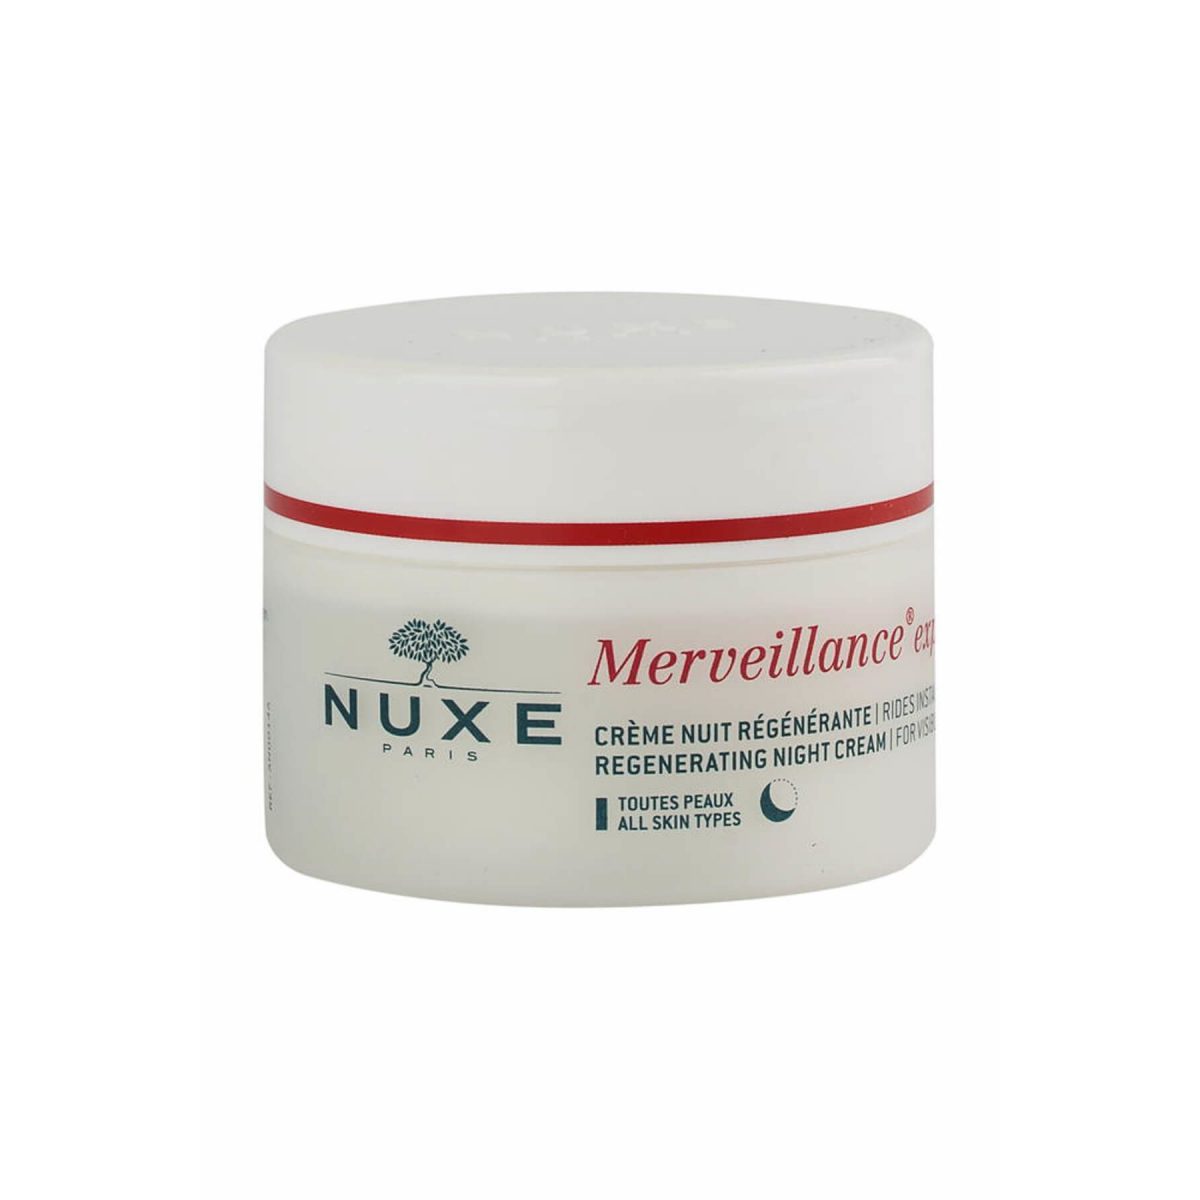 Merveillance Expert® Llift and Firm Night Cream